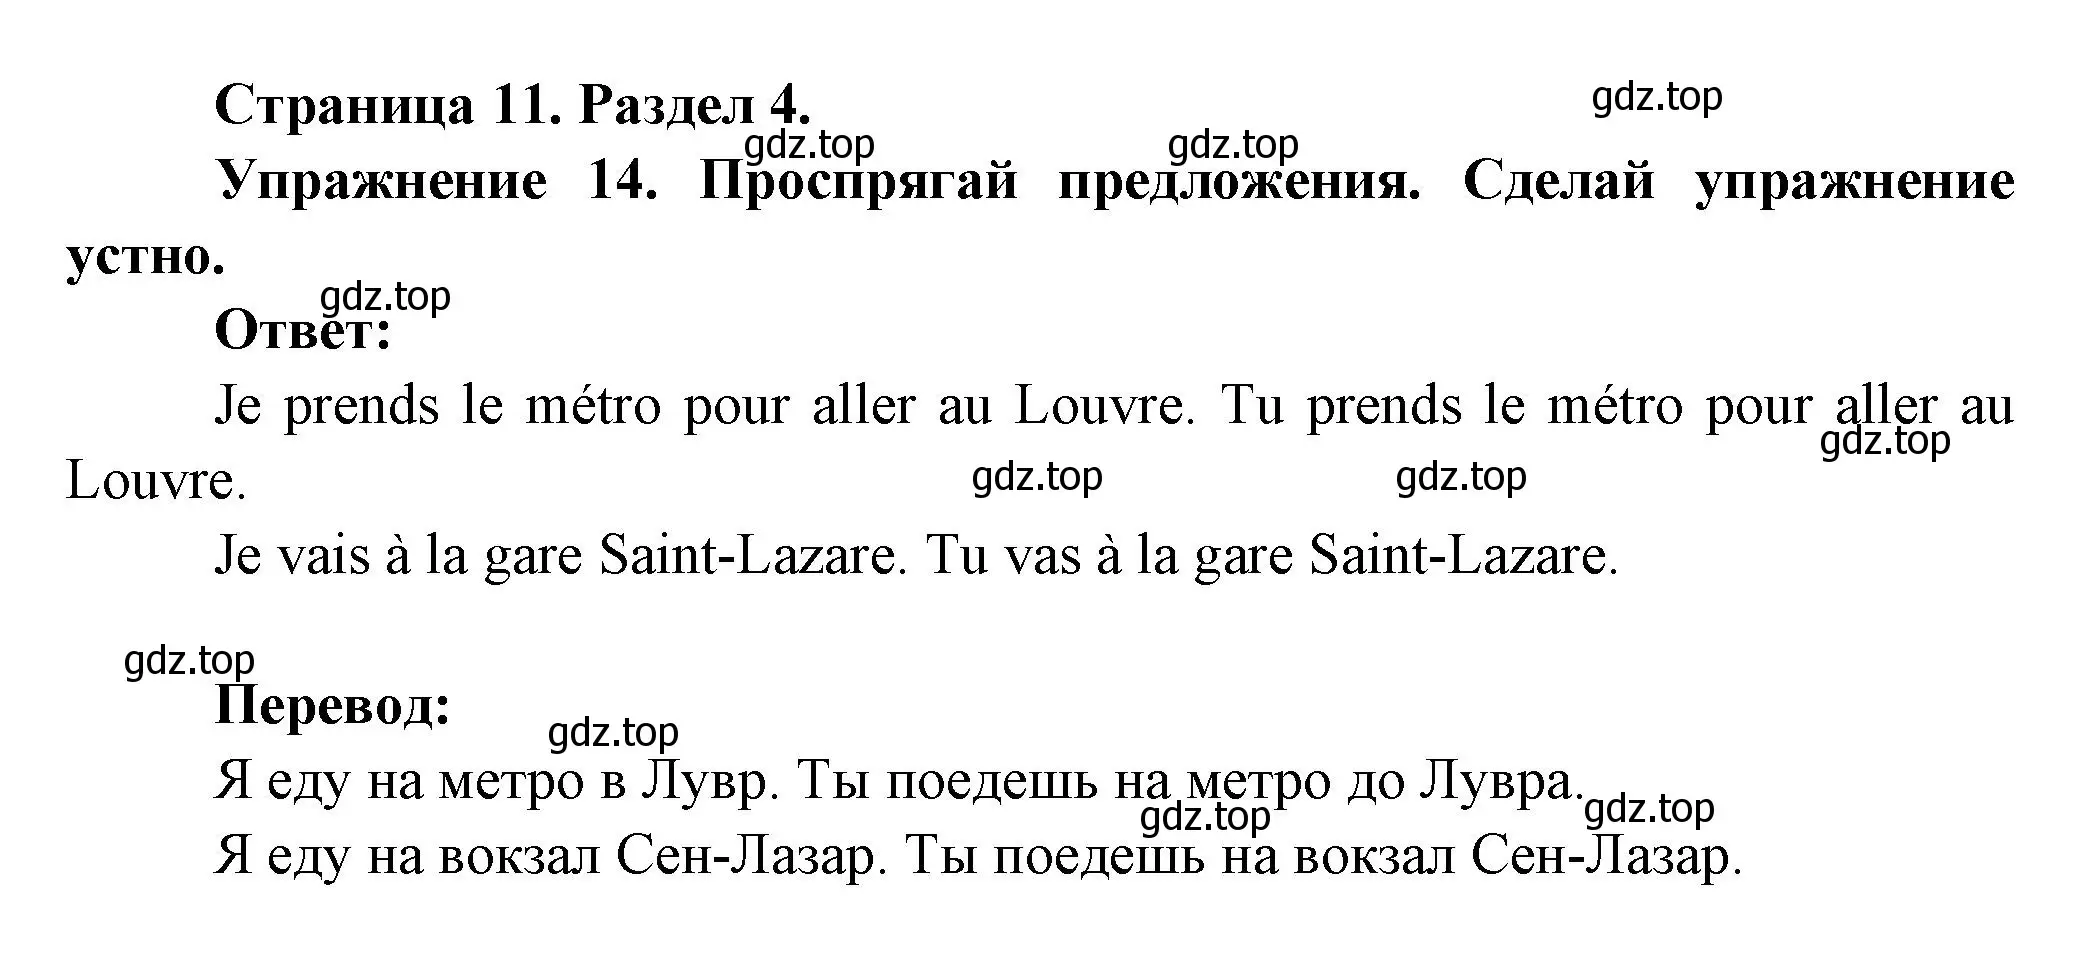 Решение номер 14 (страница 11) гдз по французскому языку 5 класс Береговская, Белосельская, учебник 2 часть